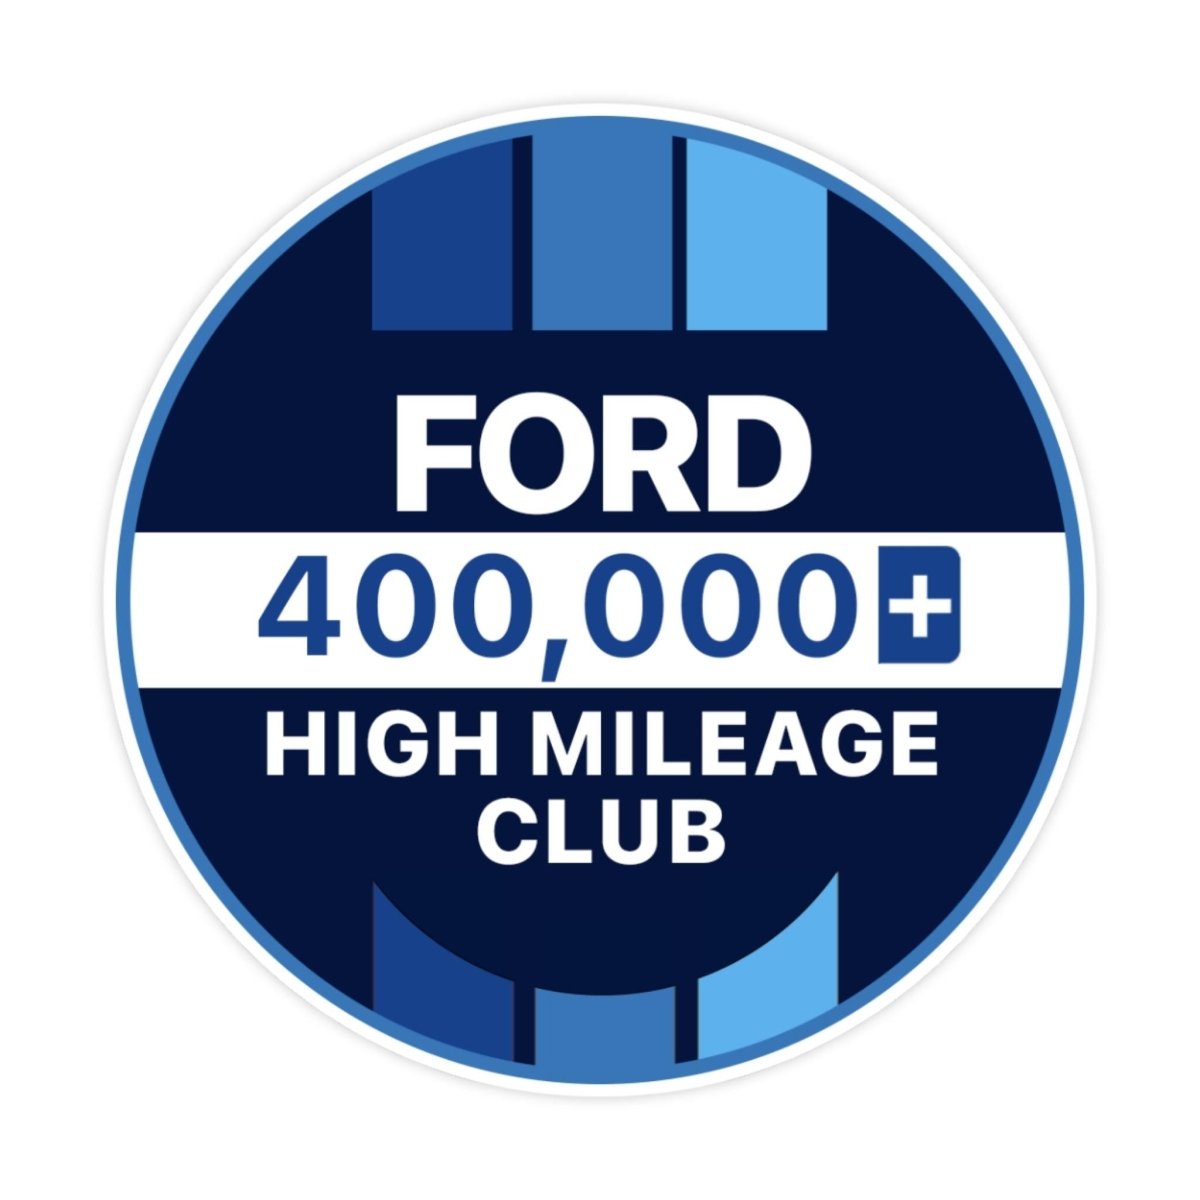 Ford 100k High Mileage Club Sticker - stickerbullFord 100k High Mileage Club StickerRetail StickerstickerbullstickerbullTaylor_Ford400k [#121]400kFord 100k High Mileage Club Sticker